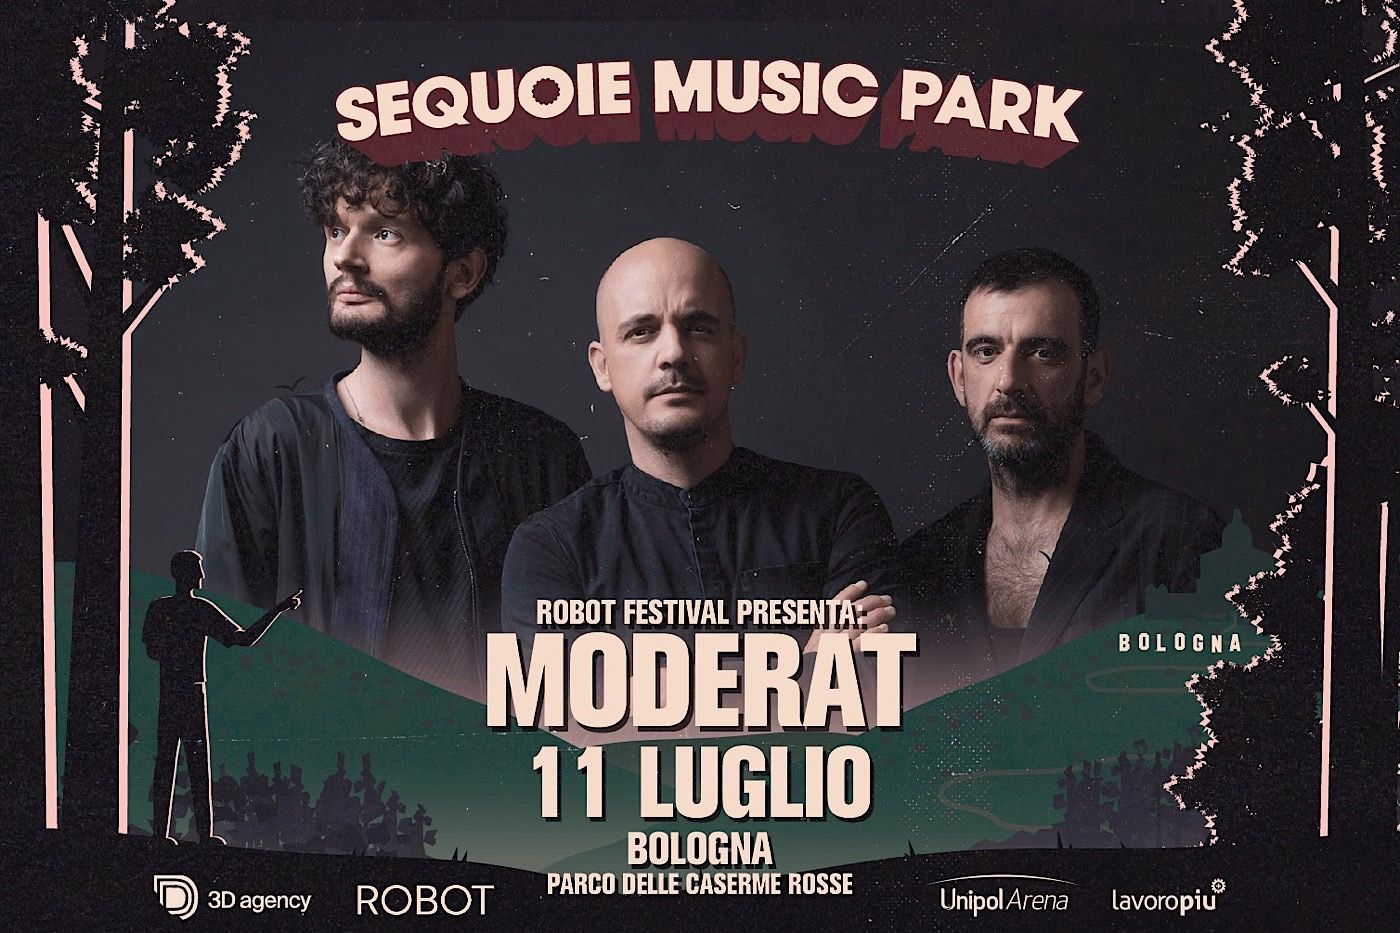 Tutto pronto per i Moderat + Il Quadro di Troisi a Sequoie Music Park (Bologna)